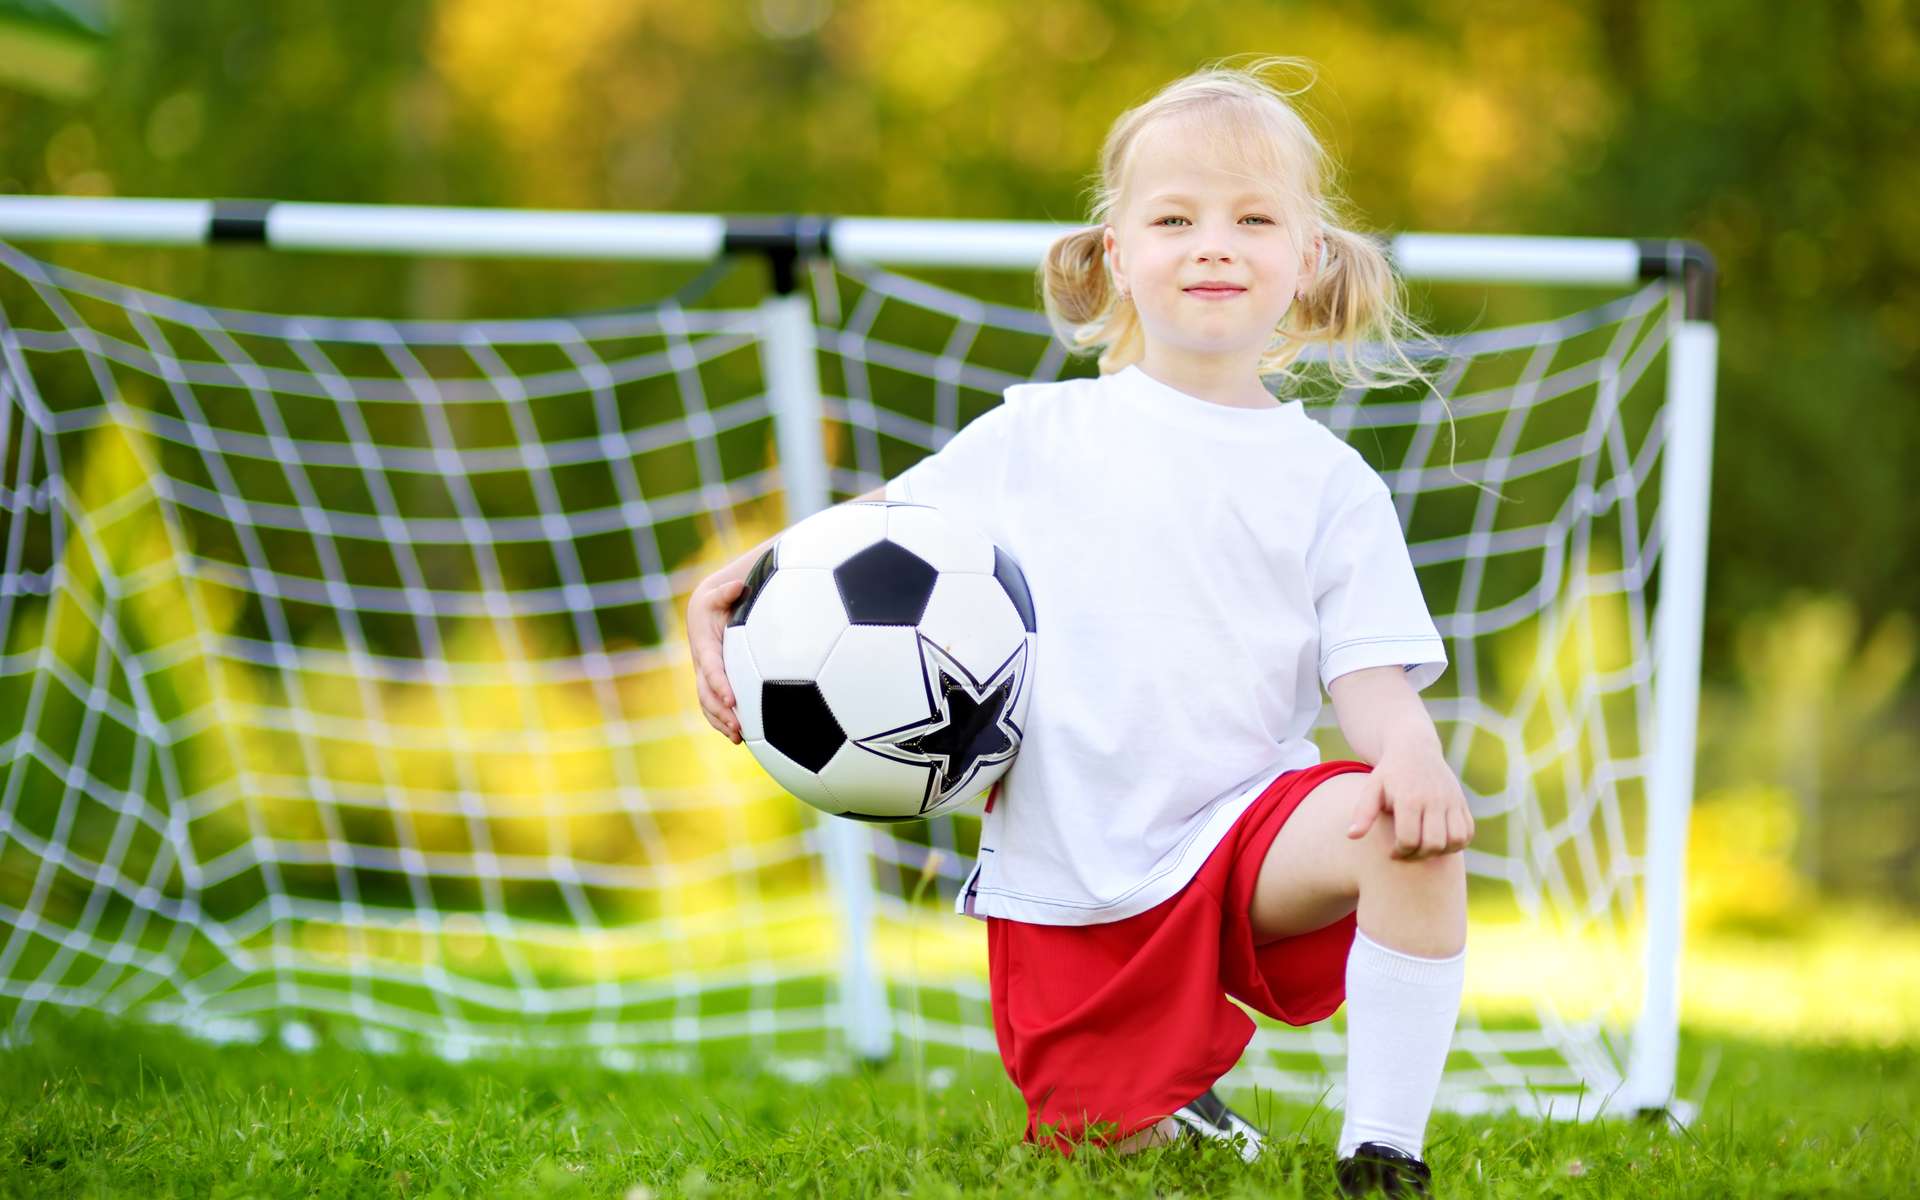 Comment aider son enfant à choisir une activité sportive ?